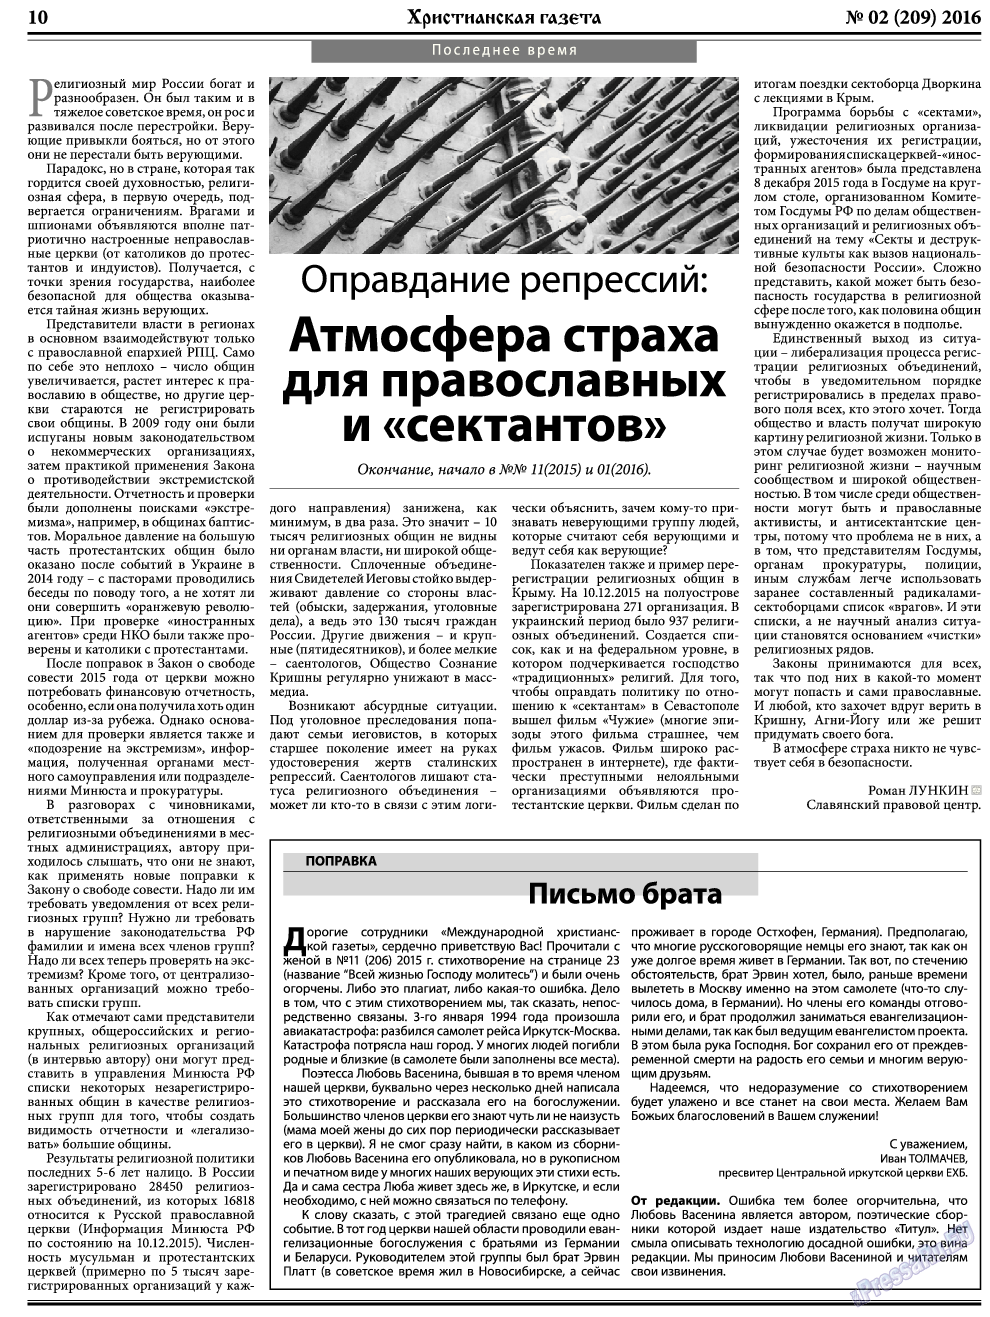 Христианская газета, газета. 2016 №2 стр.10